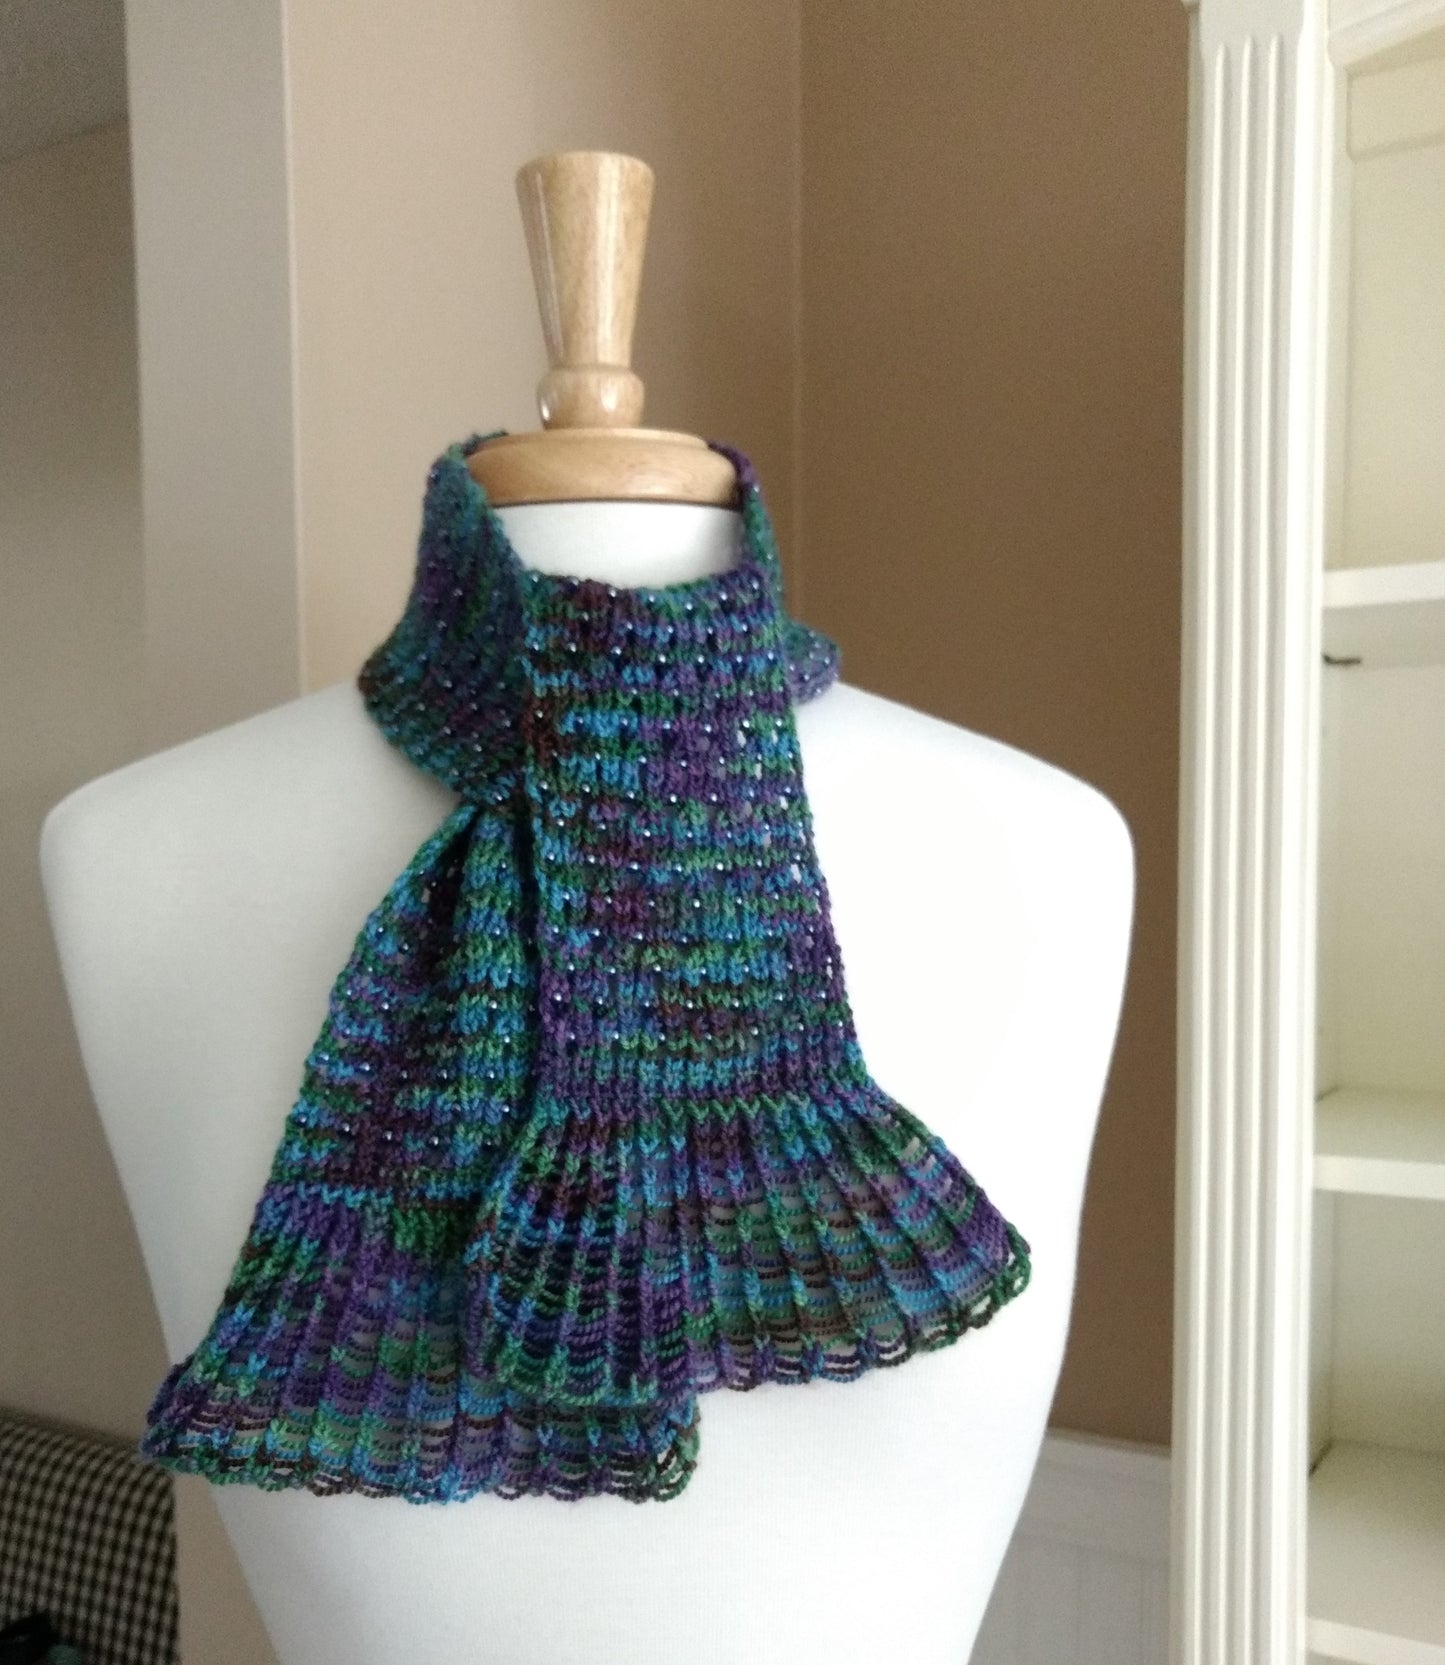 Waterfall Lace Cravat Knitting Pattern